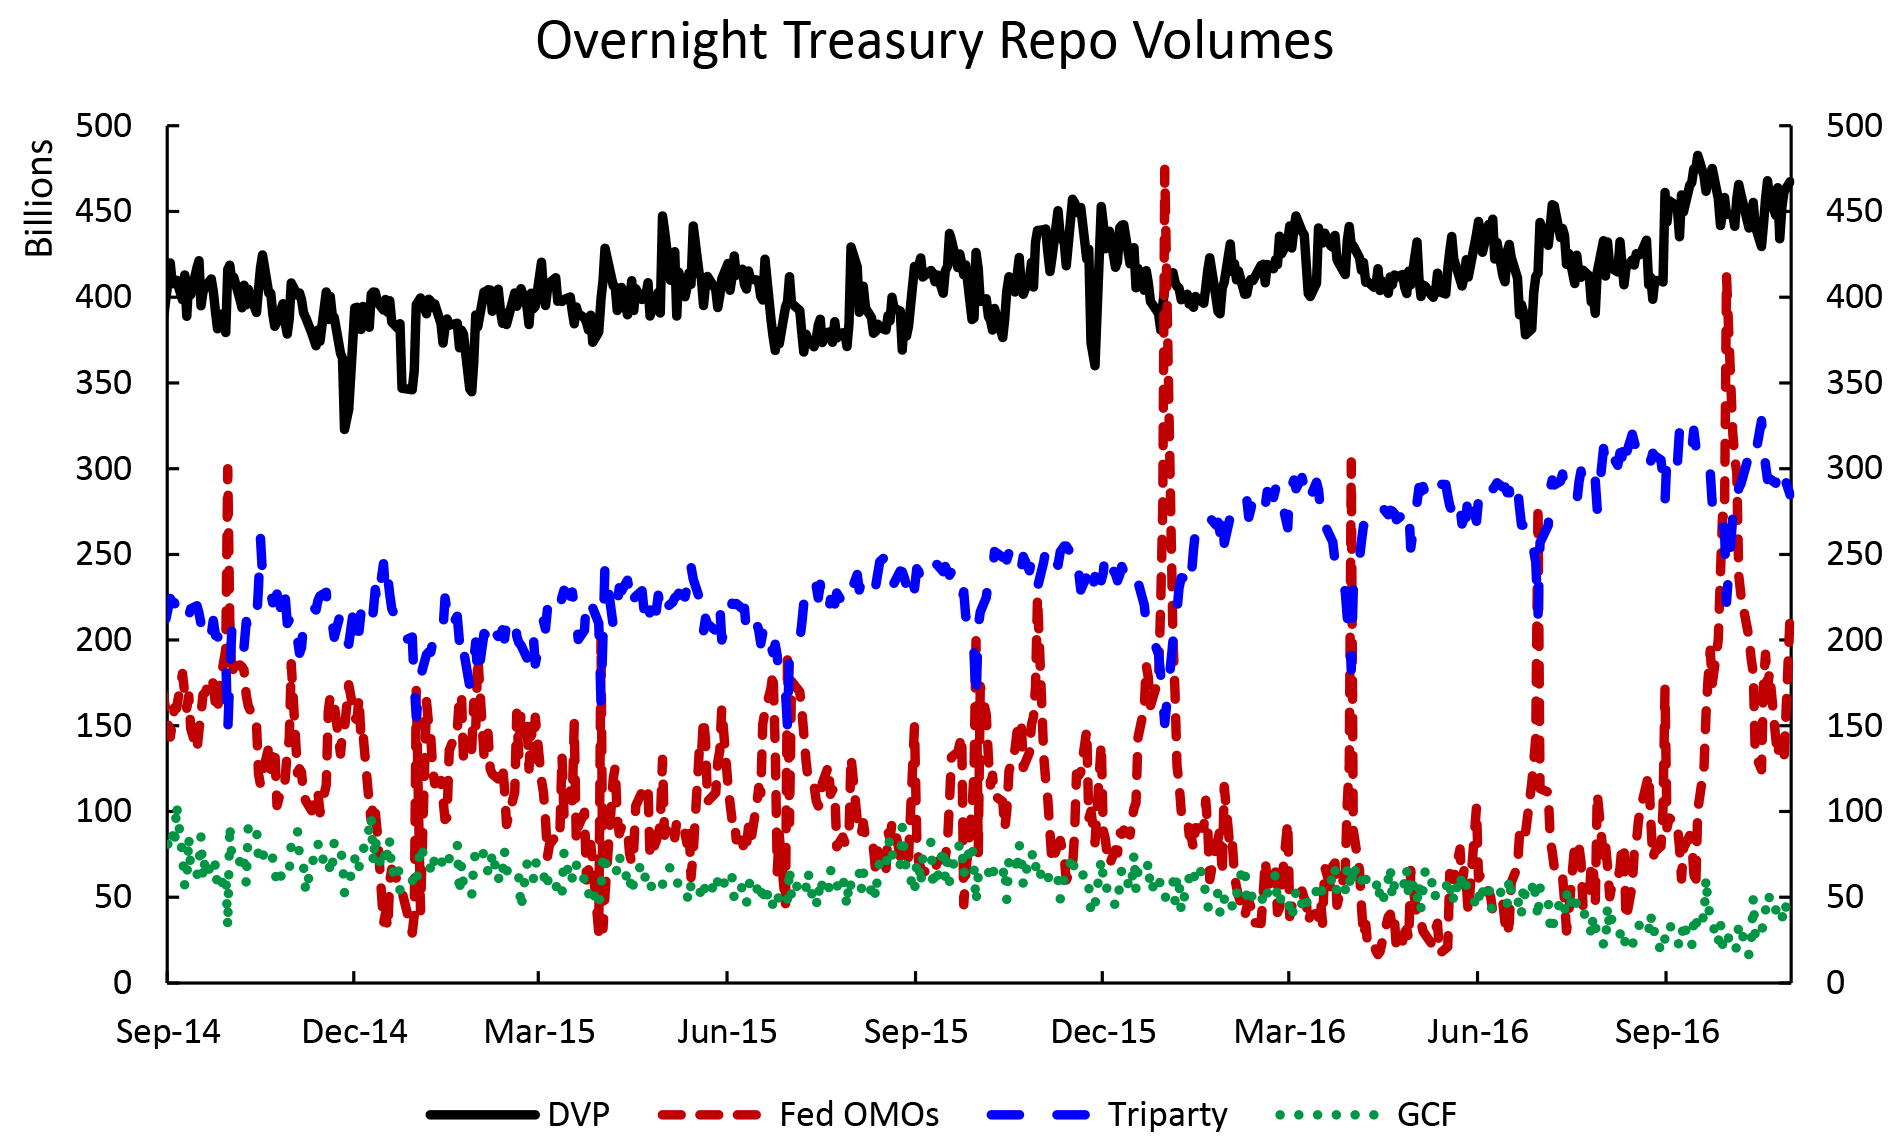 Figure 1: Overnight Treasury Repo Volumes. See accessible link for data description.